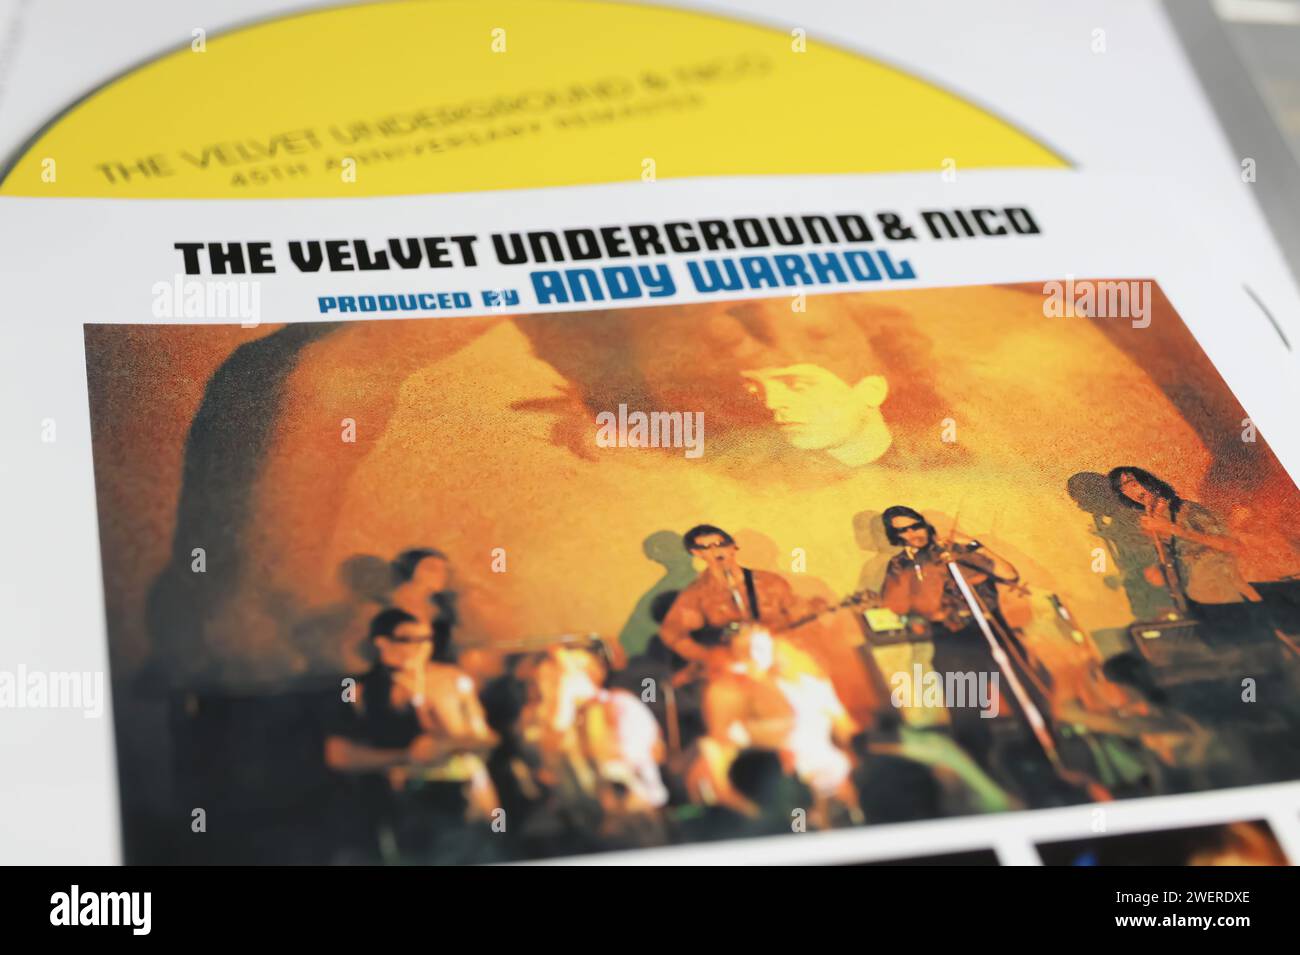 Viersen, Deutschland - 9. Januar. 2024: Nahaufnahme des Samvet Underground und Nico-Albumcovers von Andy Warhol Stockfoto